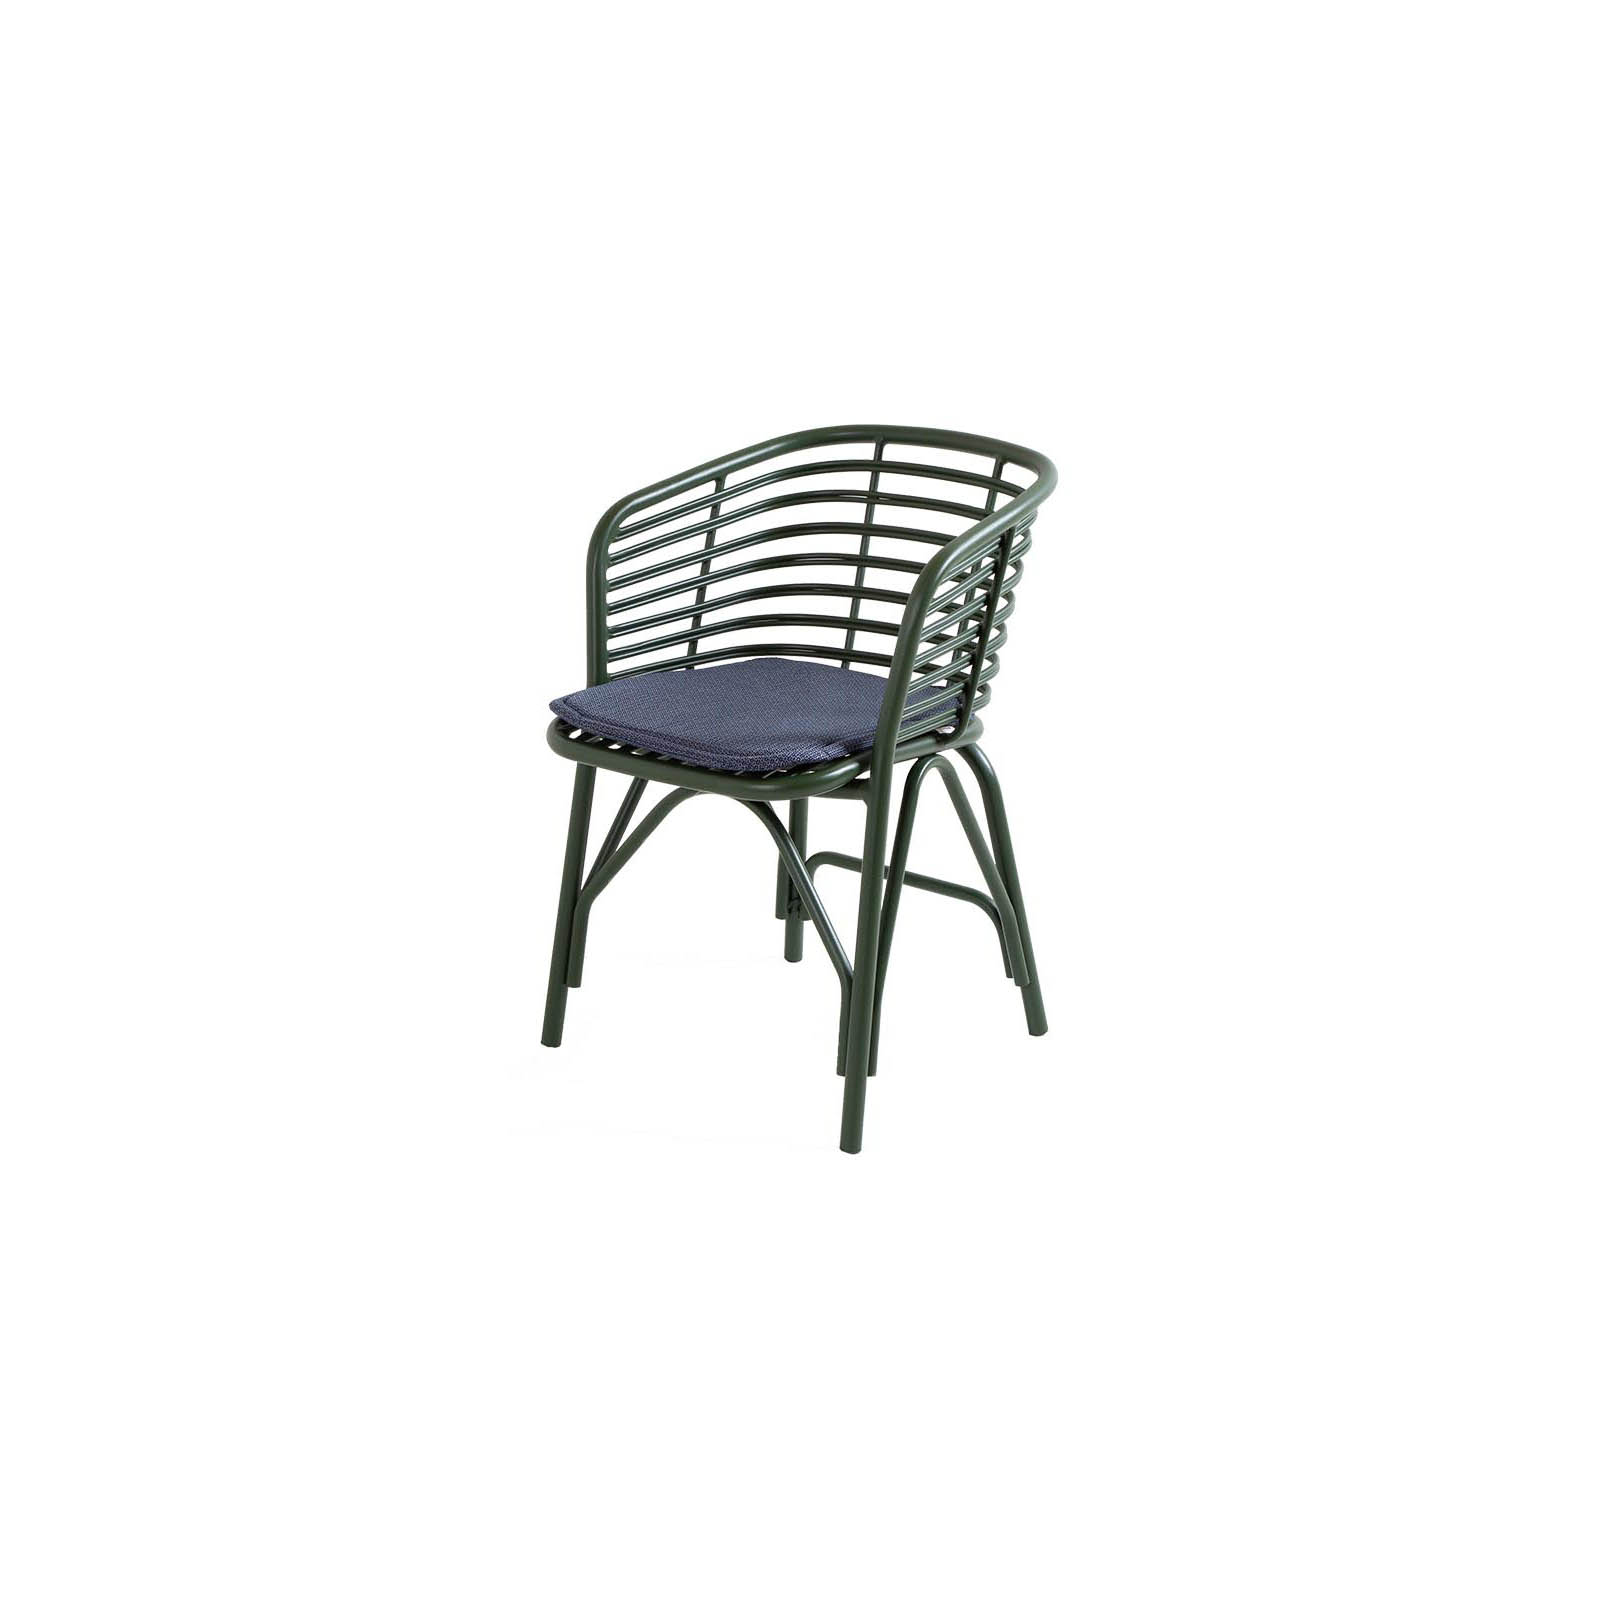 Blend Stuhl aus Aluminium in Dark Green mit Kissen aus Cane-line Link in Blue